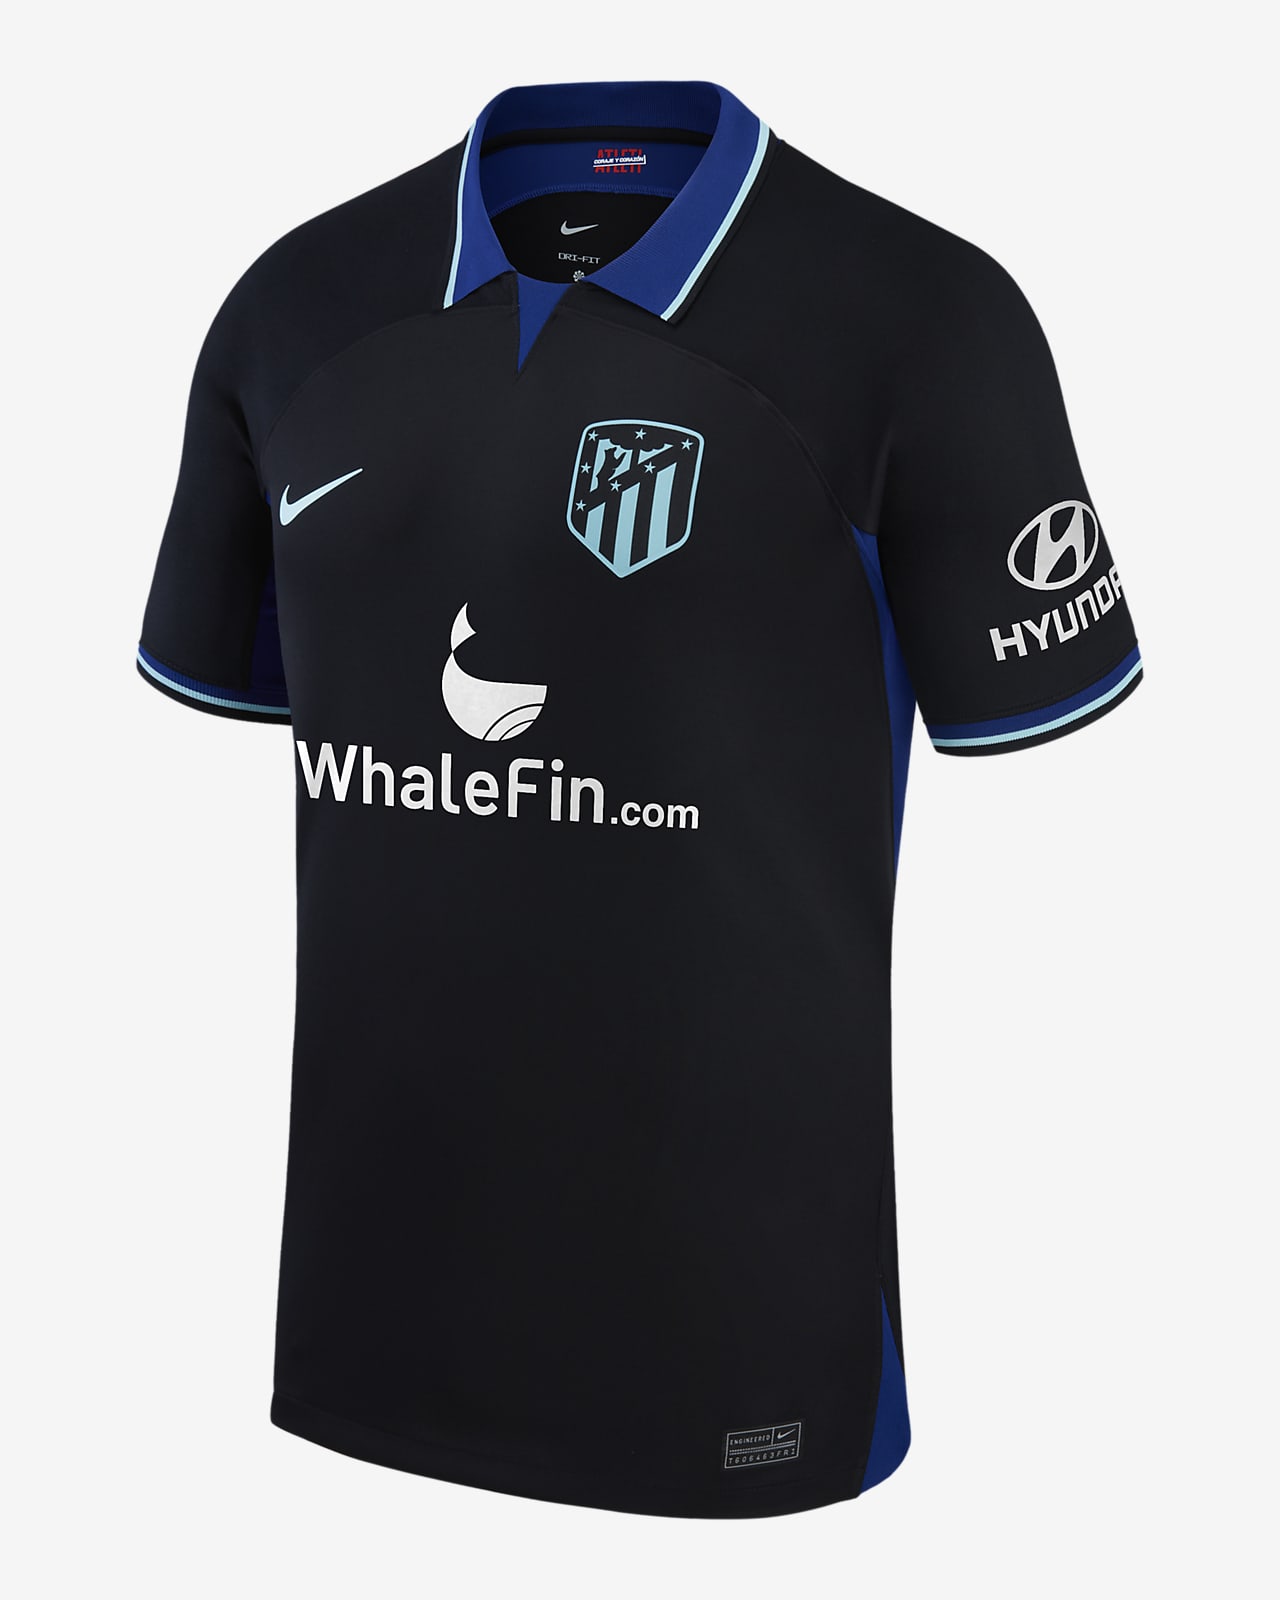 Jersey de fútbol Nike Dri-FIT para hombre del Club Atlético de Madrid visitante (Joao Felix) 2022/23 Stadium